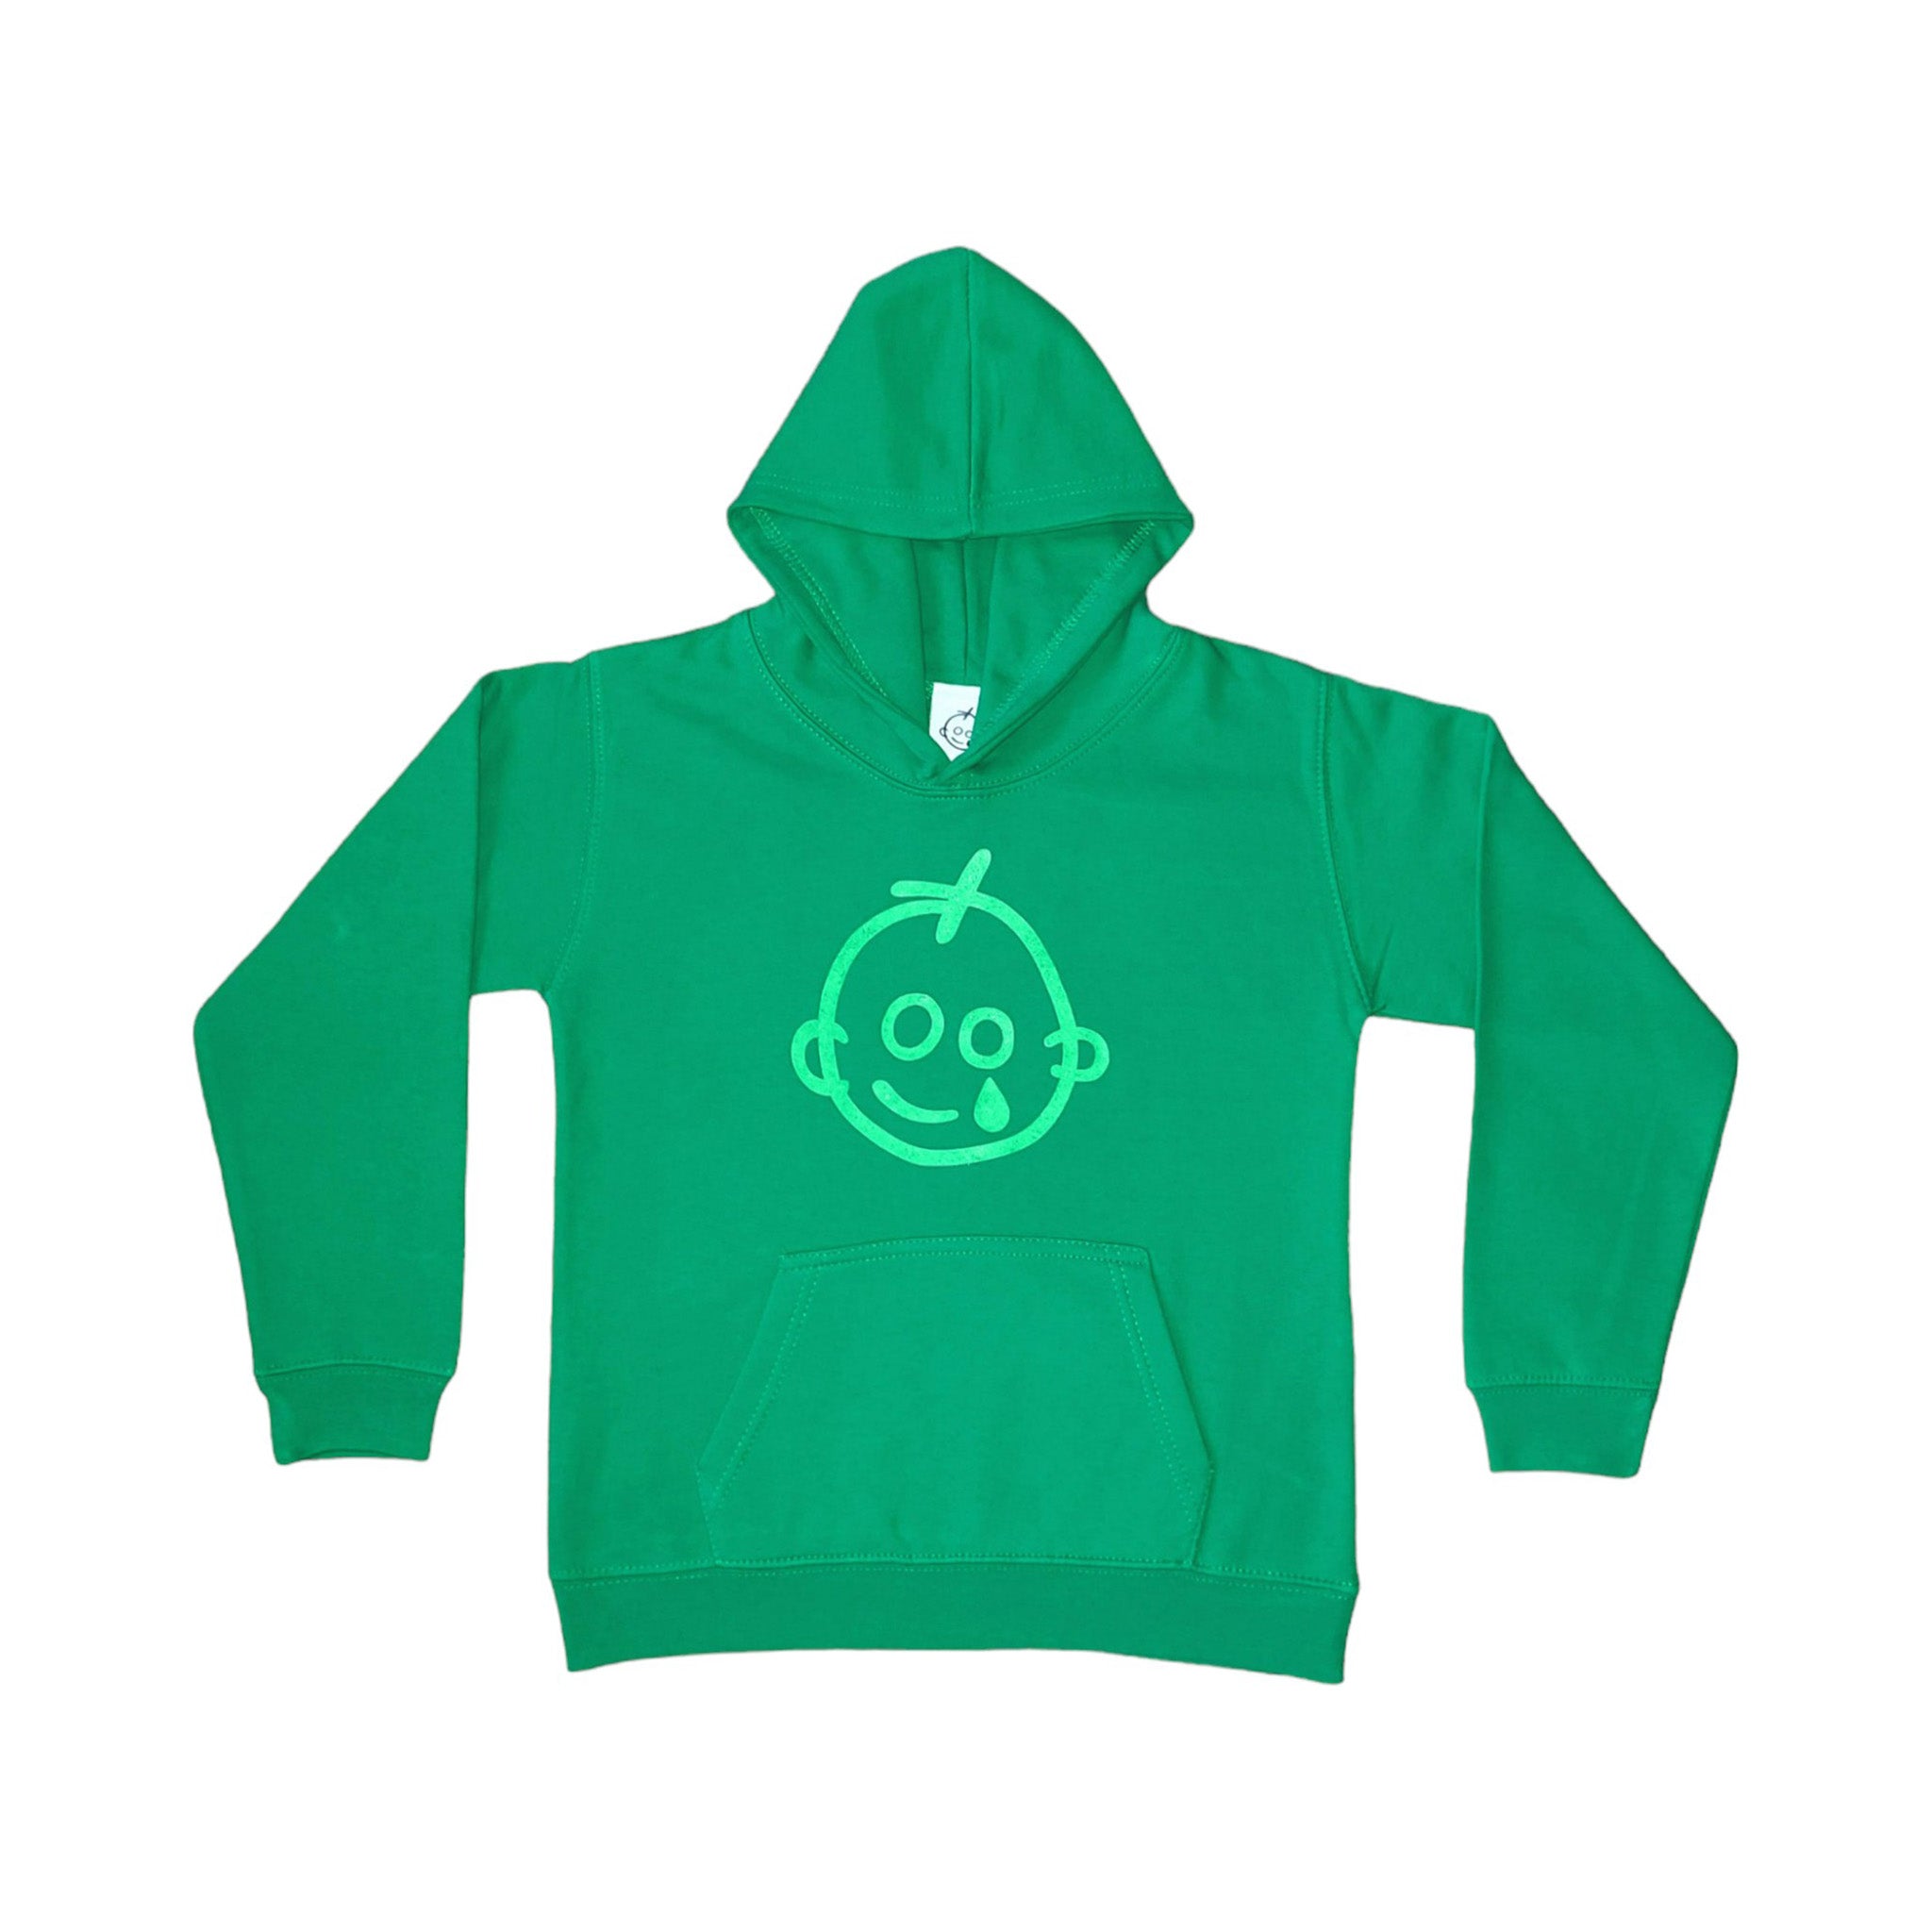 Green GOSH Logo Hoodie (Children's size)